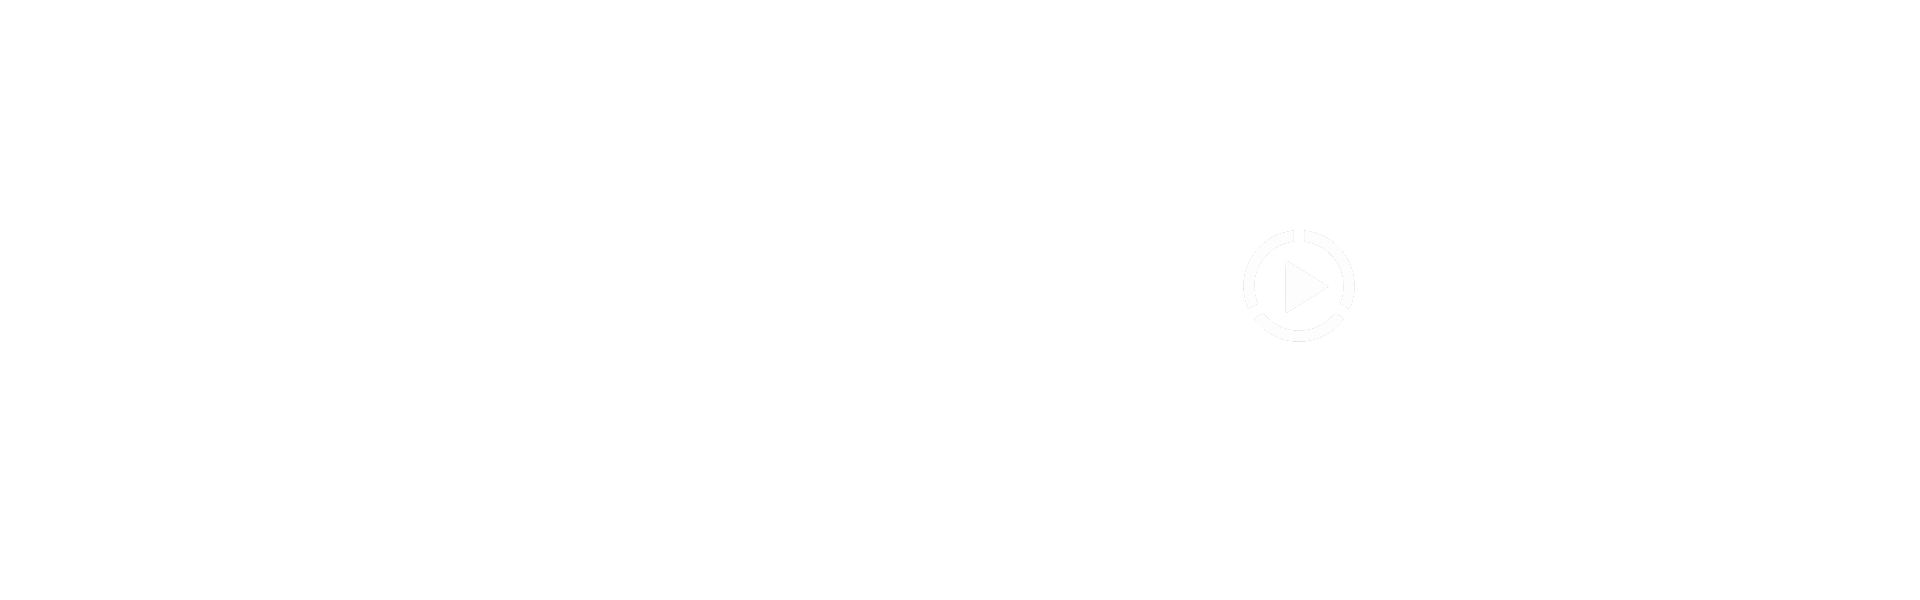 Leinolat Group - katso video